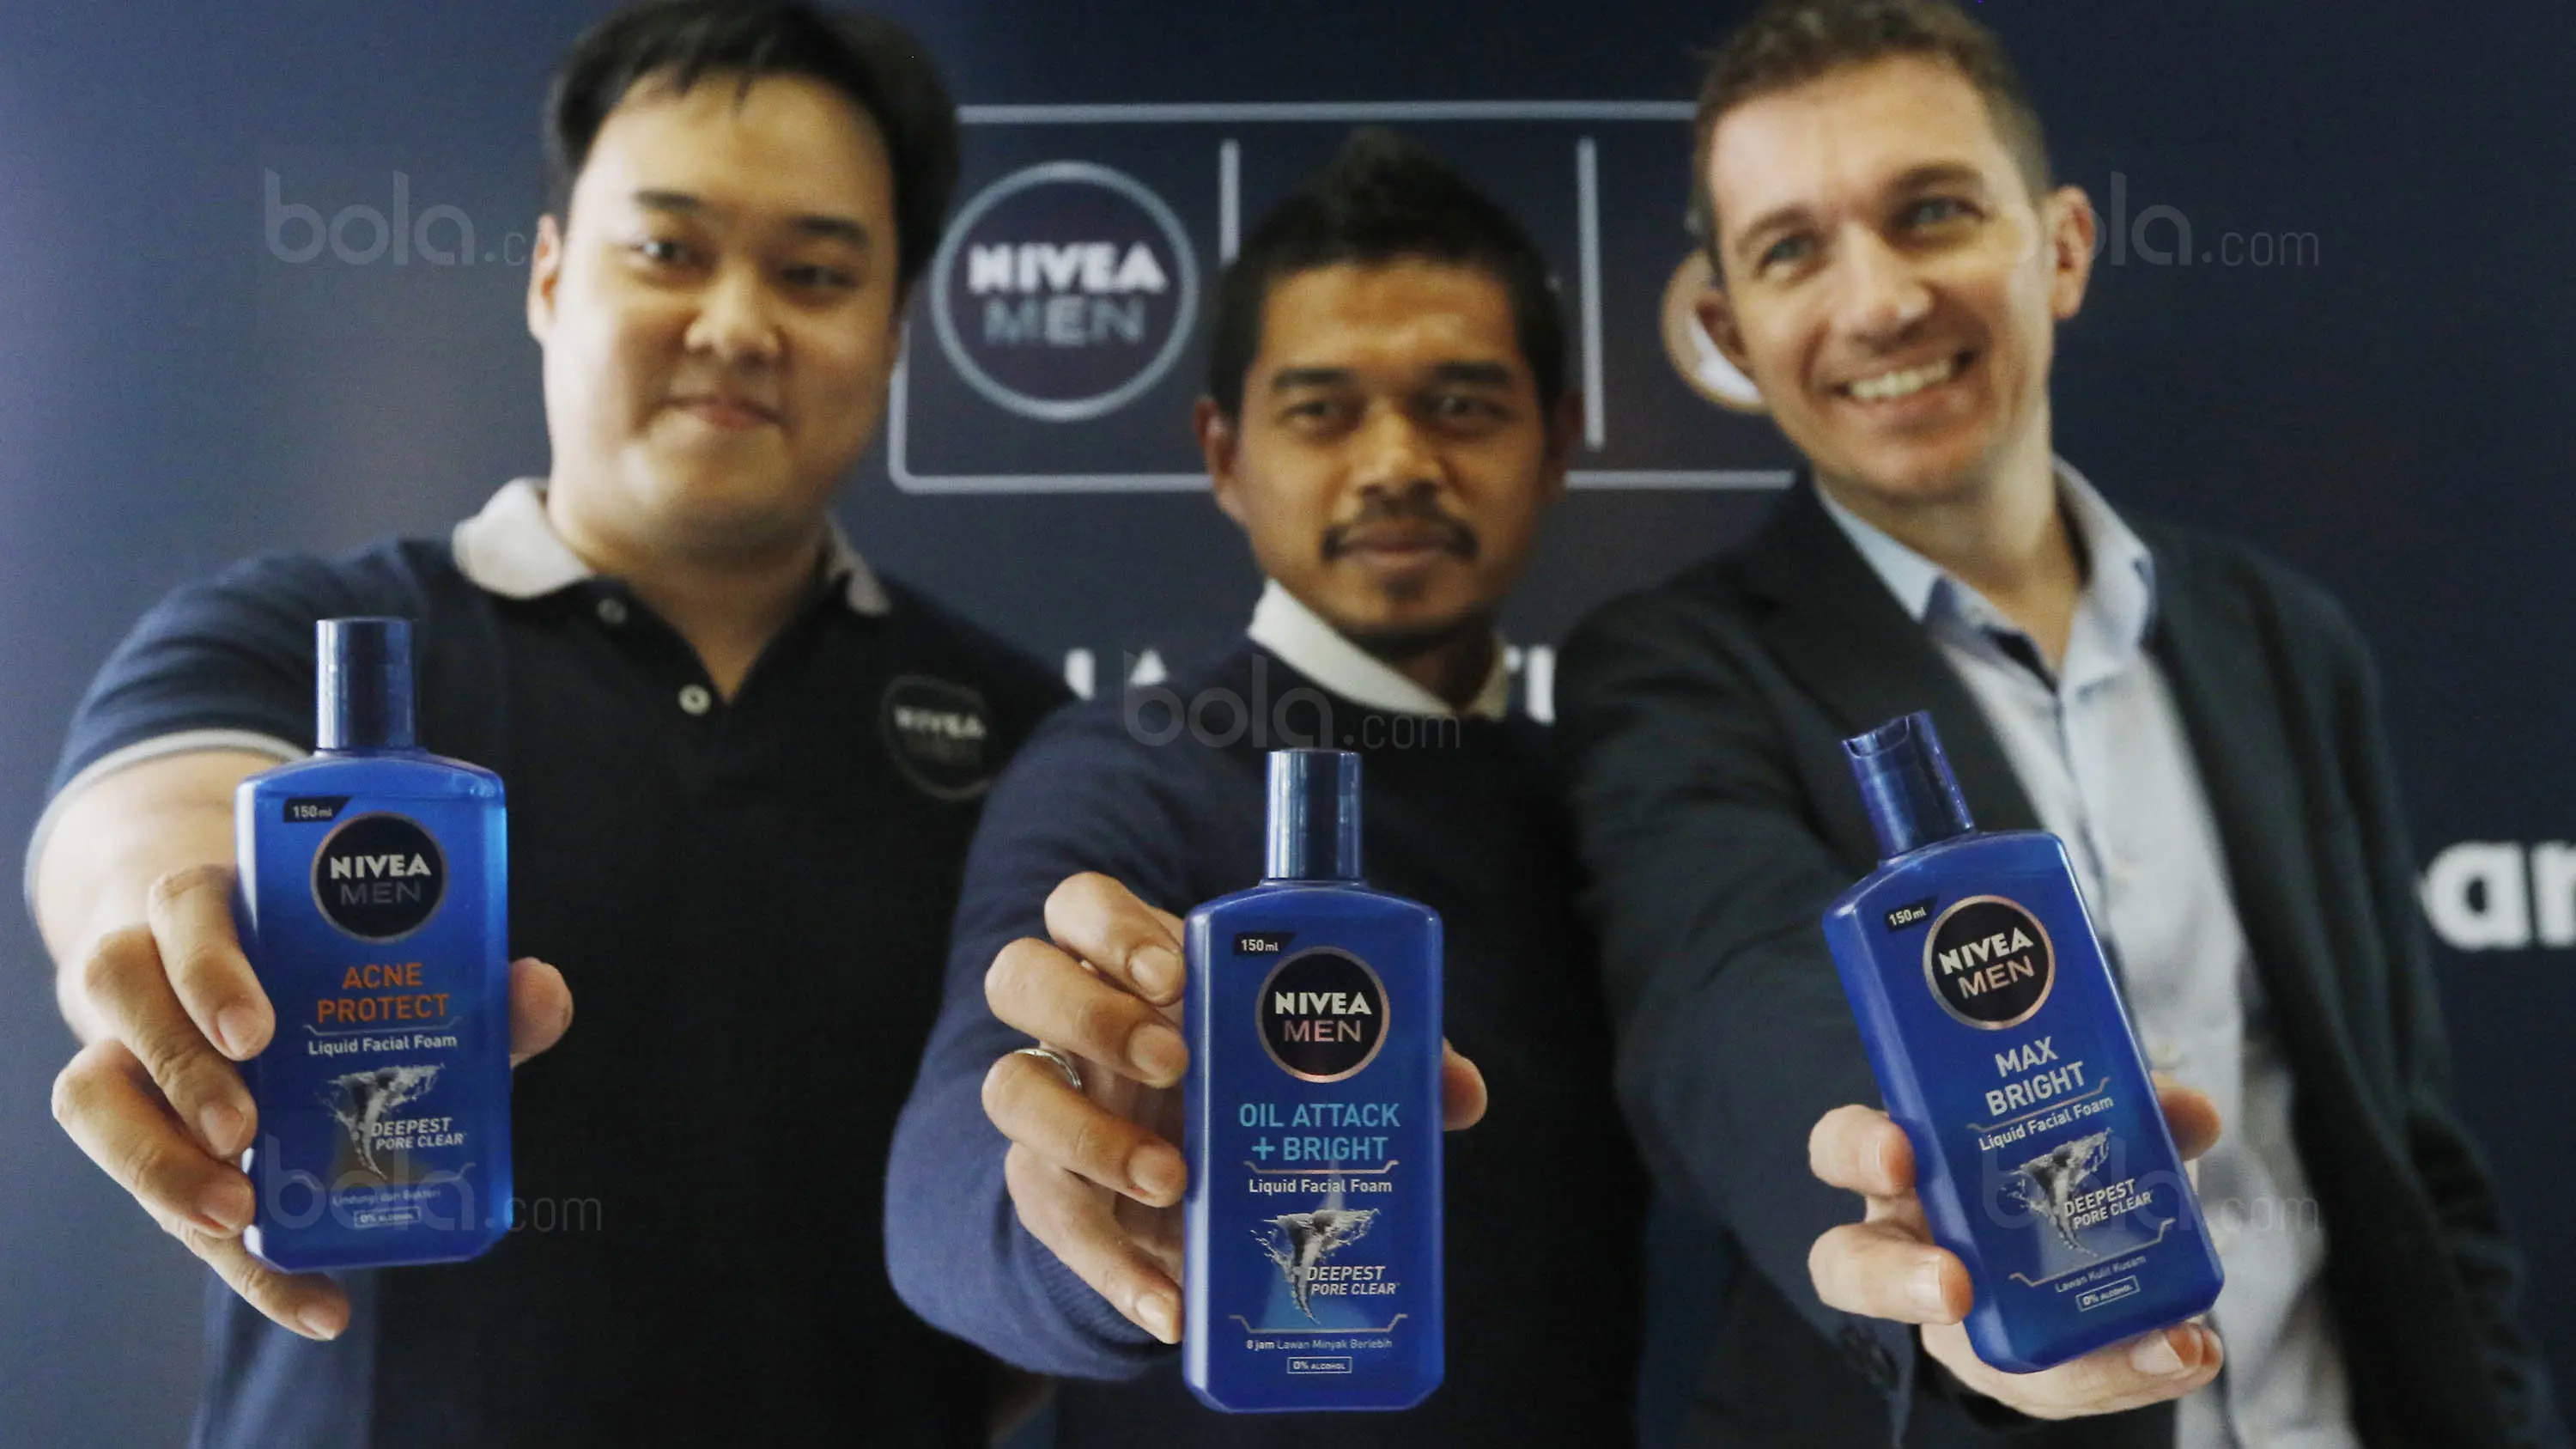 Bambang Pamungkas bersama Tomasz Schwarz dan Michael Suwito saat acara peluncuran produk Nivea Men di Jakarta, Selasa, (5/9/2017). Nivea mengeluarkan produk baru berupa sabun muka cair untuk pria. (Bola.com/M Iqbal Ichsan)